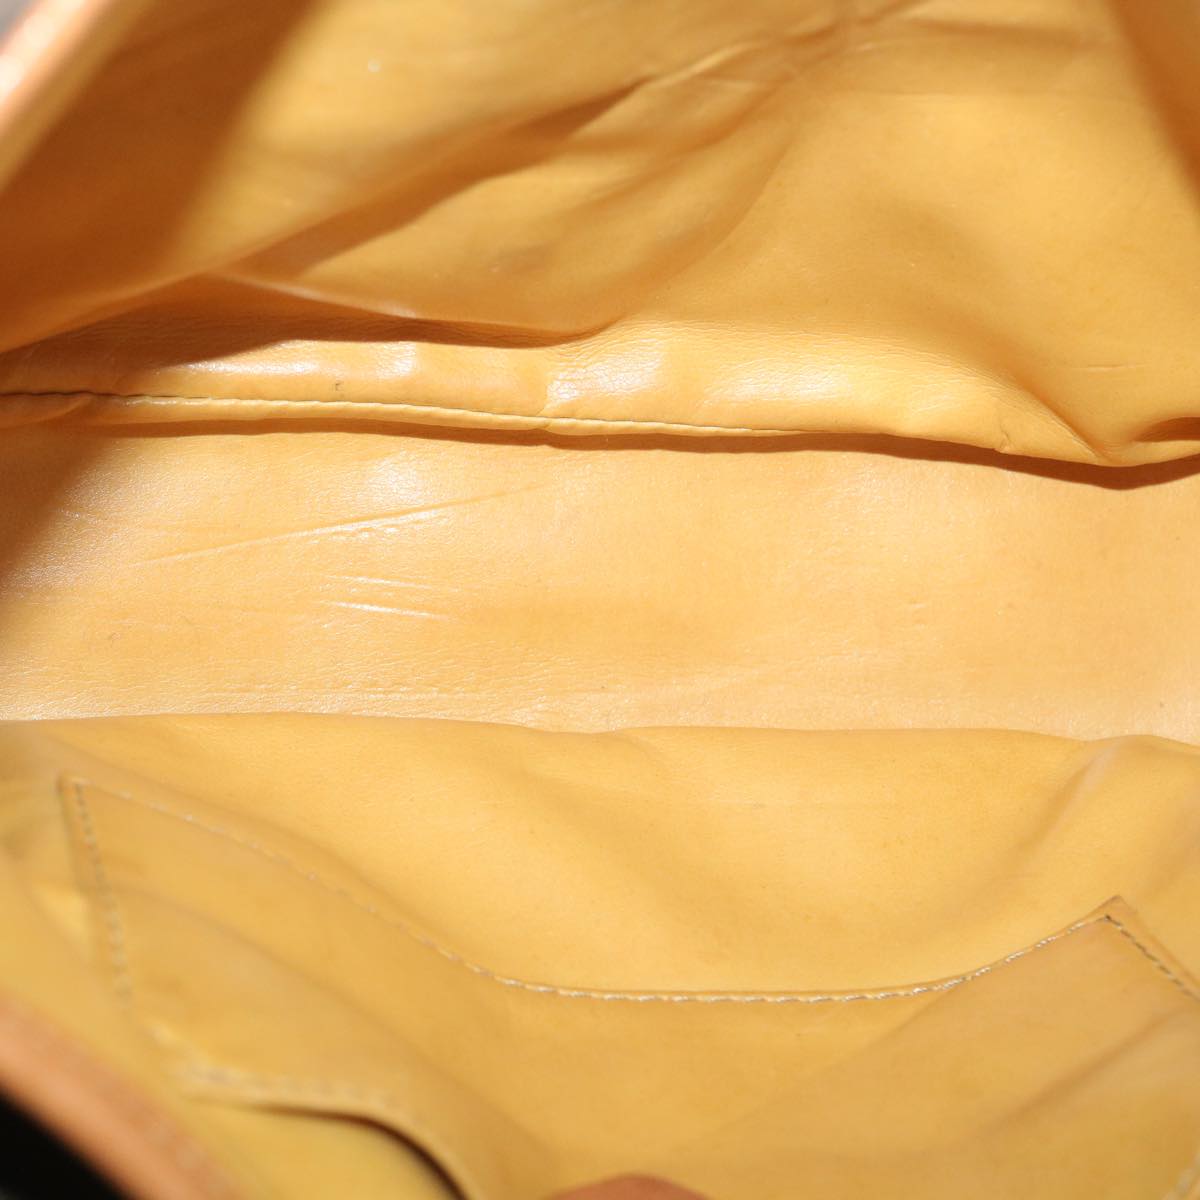 CELINE Macadam Canvas Shoulder Bag PVC Leather Brown Auth 34058